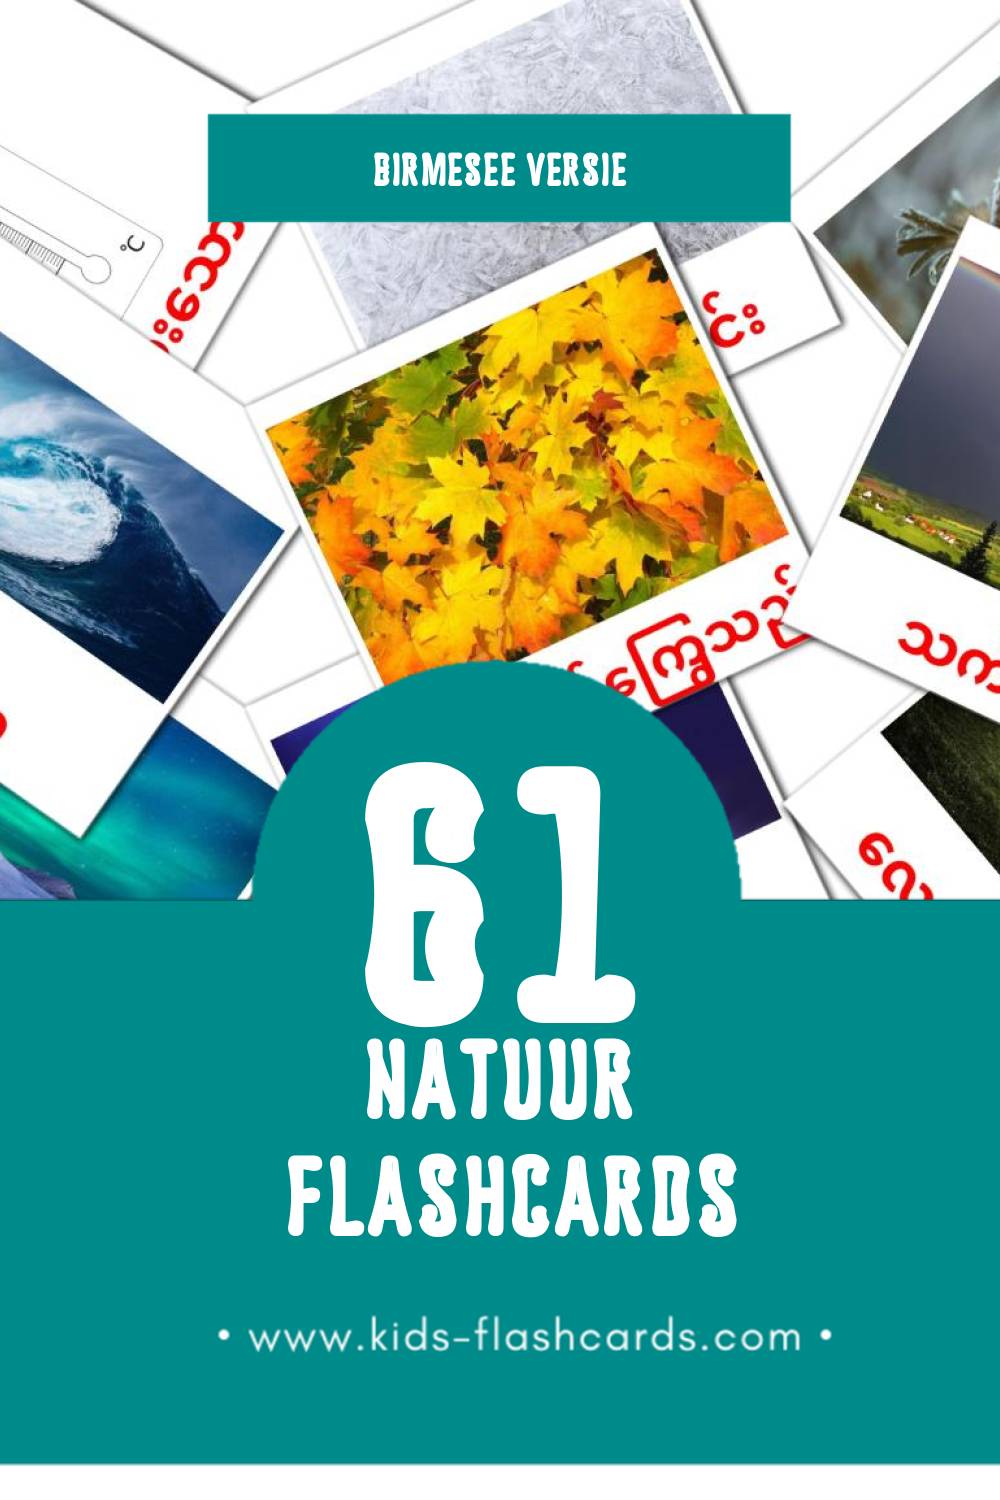 Visuele သဘာဝ Flashcards voor Kleuters (61 kaarten in het Birmese)